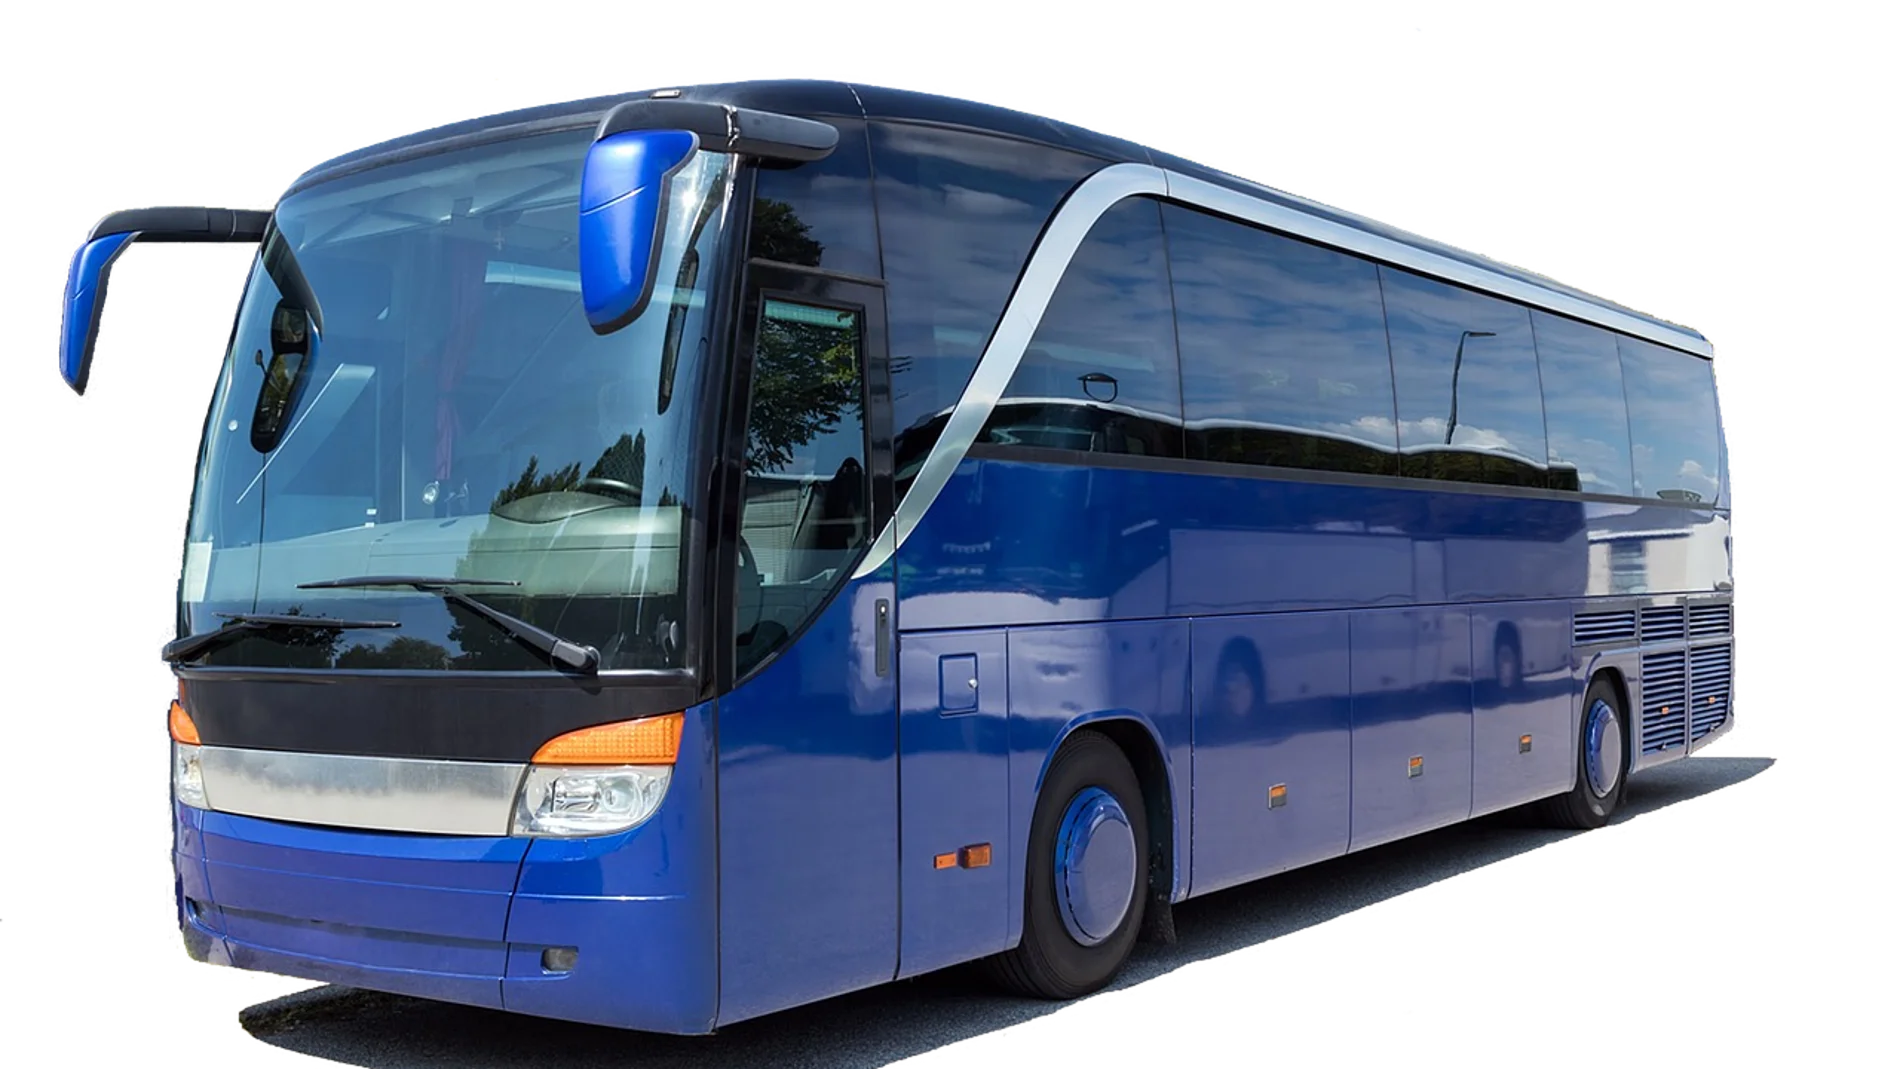 Oferta empleo: Se buscan conductores de autobús con sueldos 1.500 euros